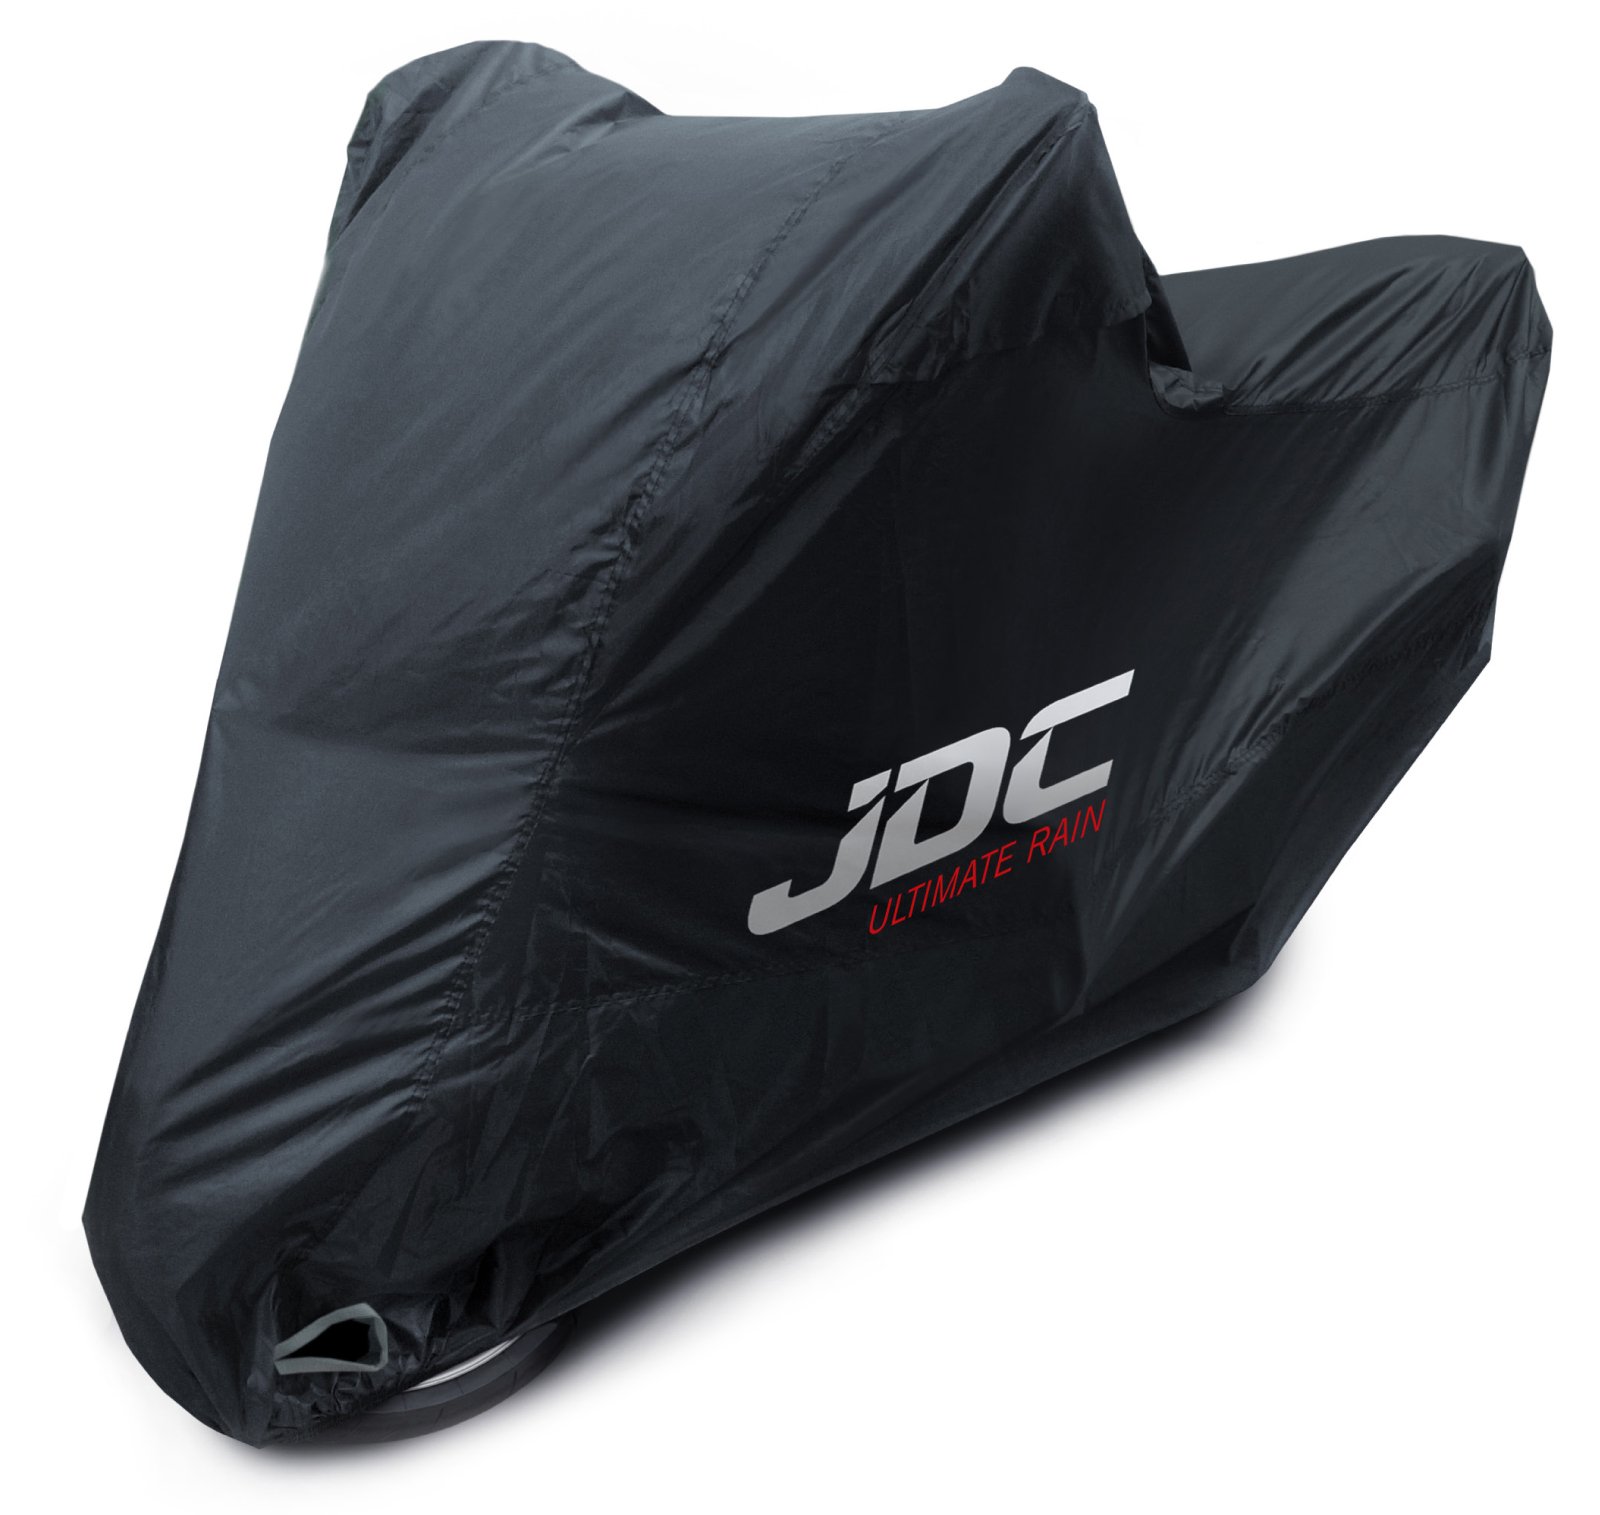 JDC 100% wasserdichte Motorradabdeckung – Ultimate RAIN (Strapazierfähig, weiches Futter, hitzebeständig, verschweißte Nähte) - S